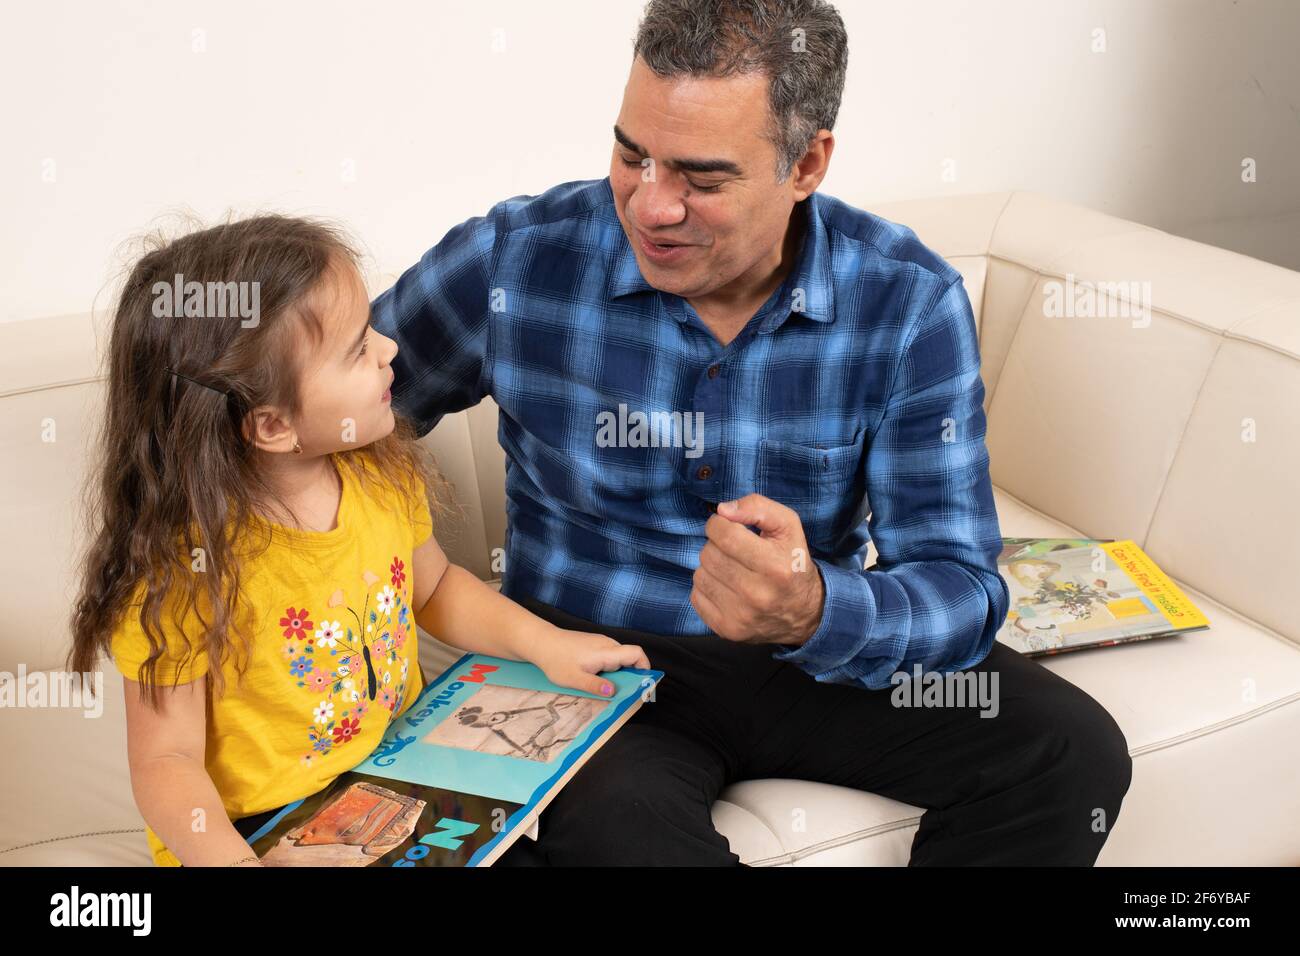 Fille de quatre ans regardant un livre d'images avec grand-père, parlant et interagissant avec lui Banque D'Images